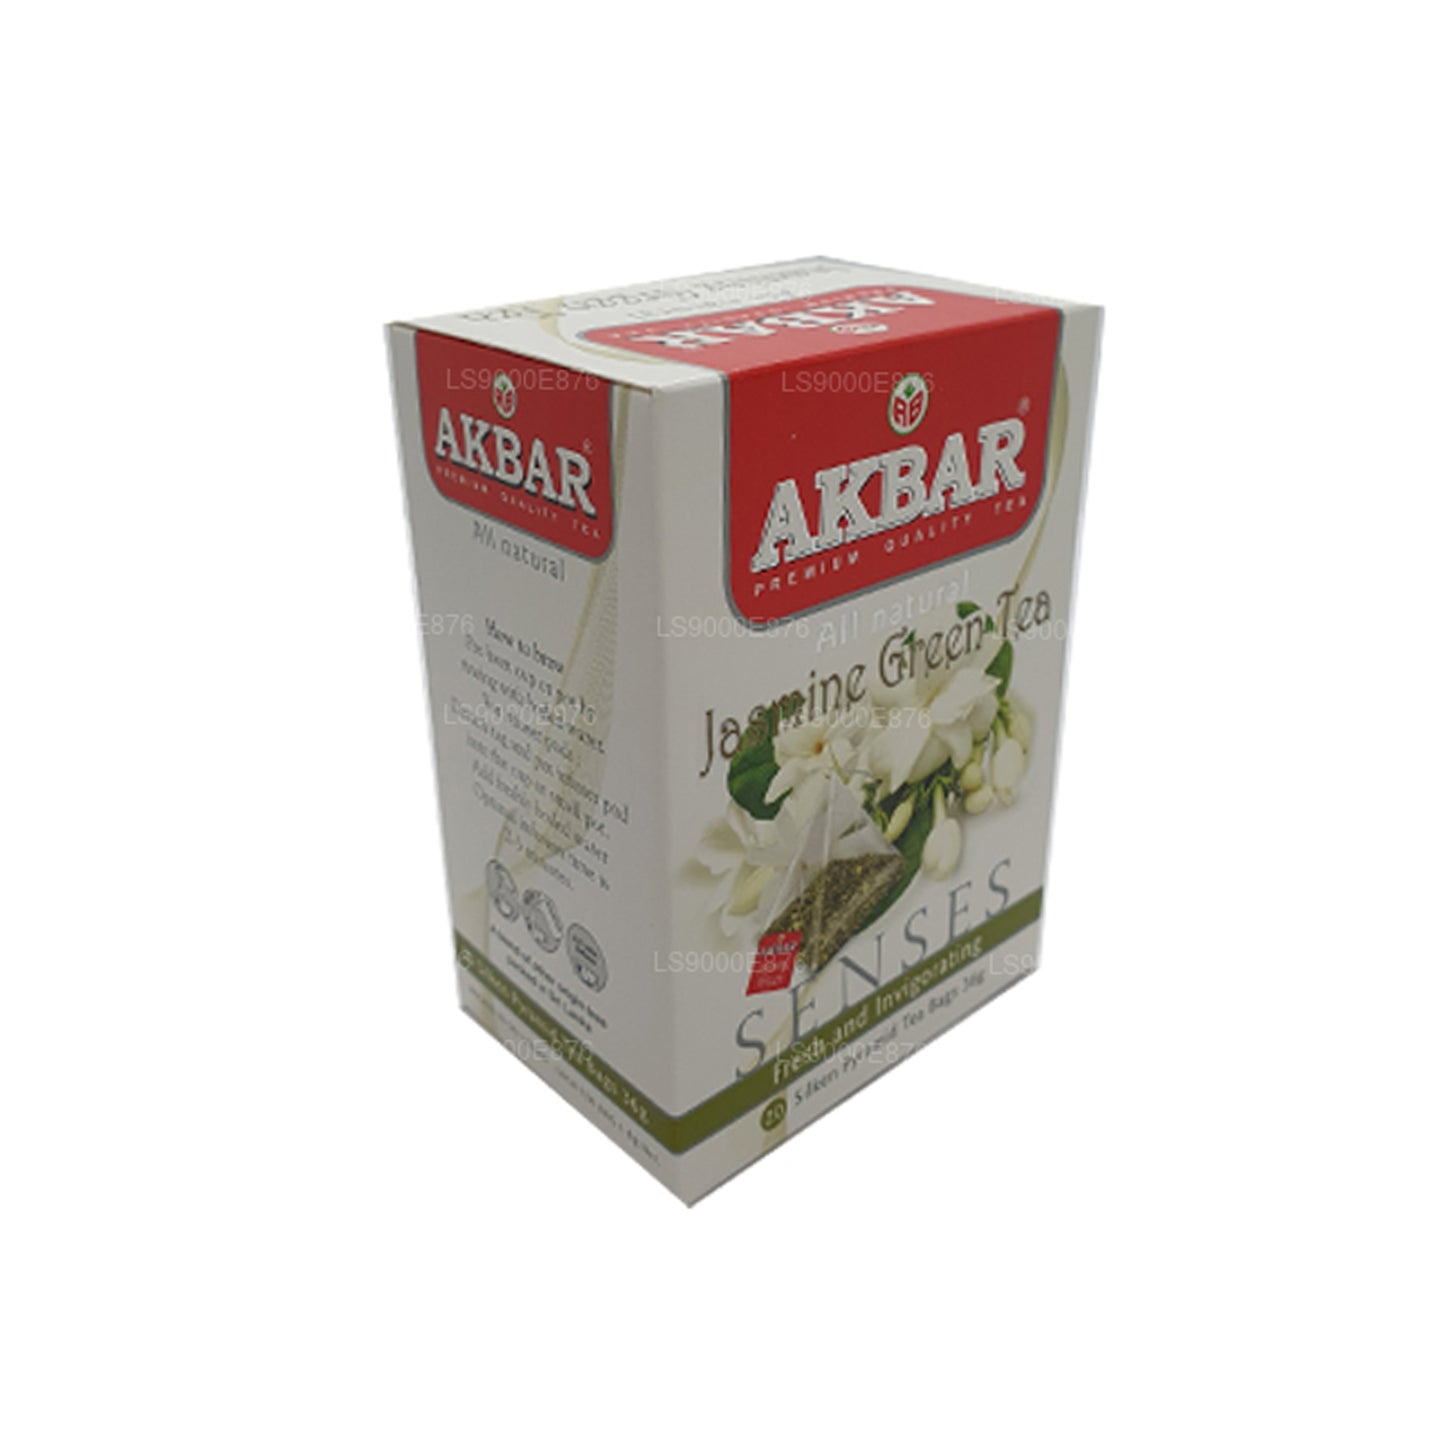 Akbar 茉莉花绿茶 (36g) 20 茶包